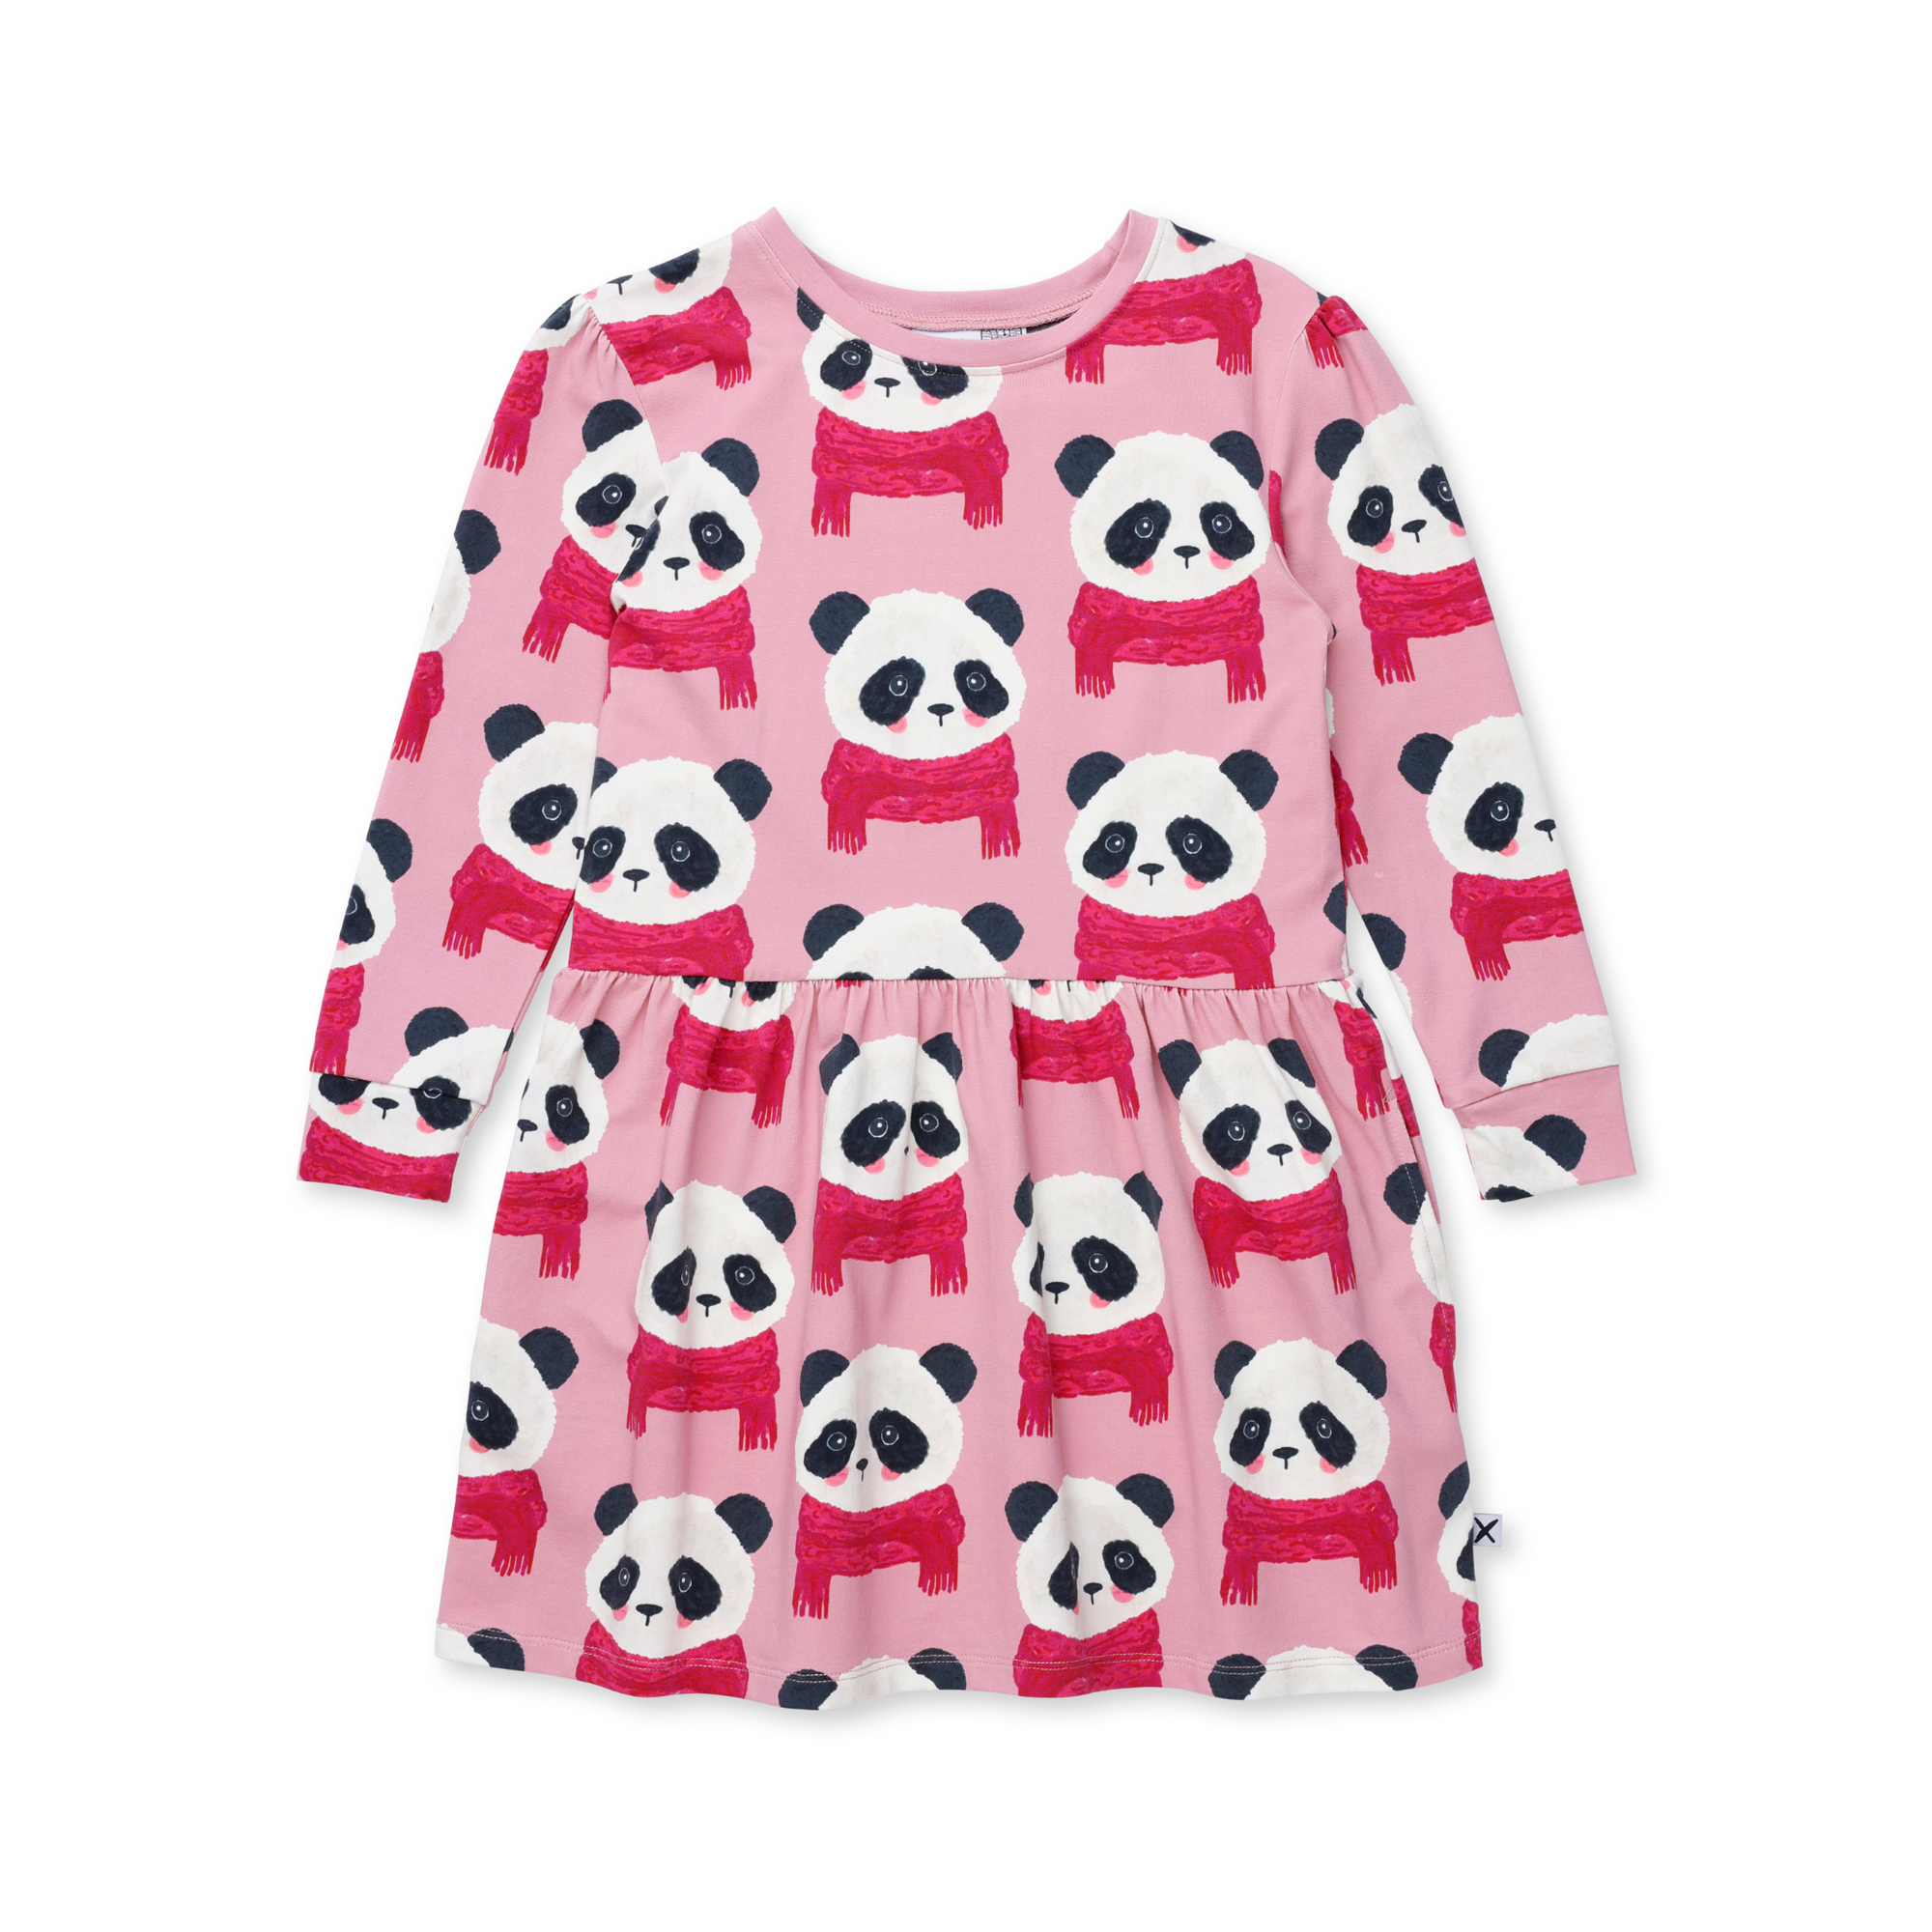 Minti Cosy Pandas Dress - Fuchsia